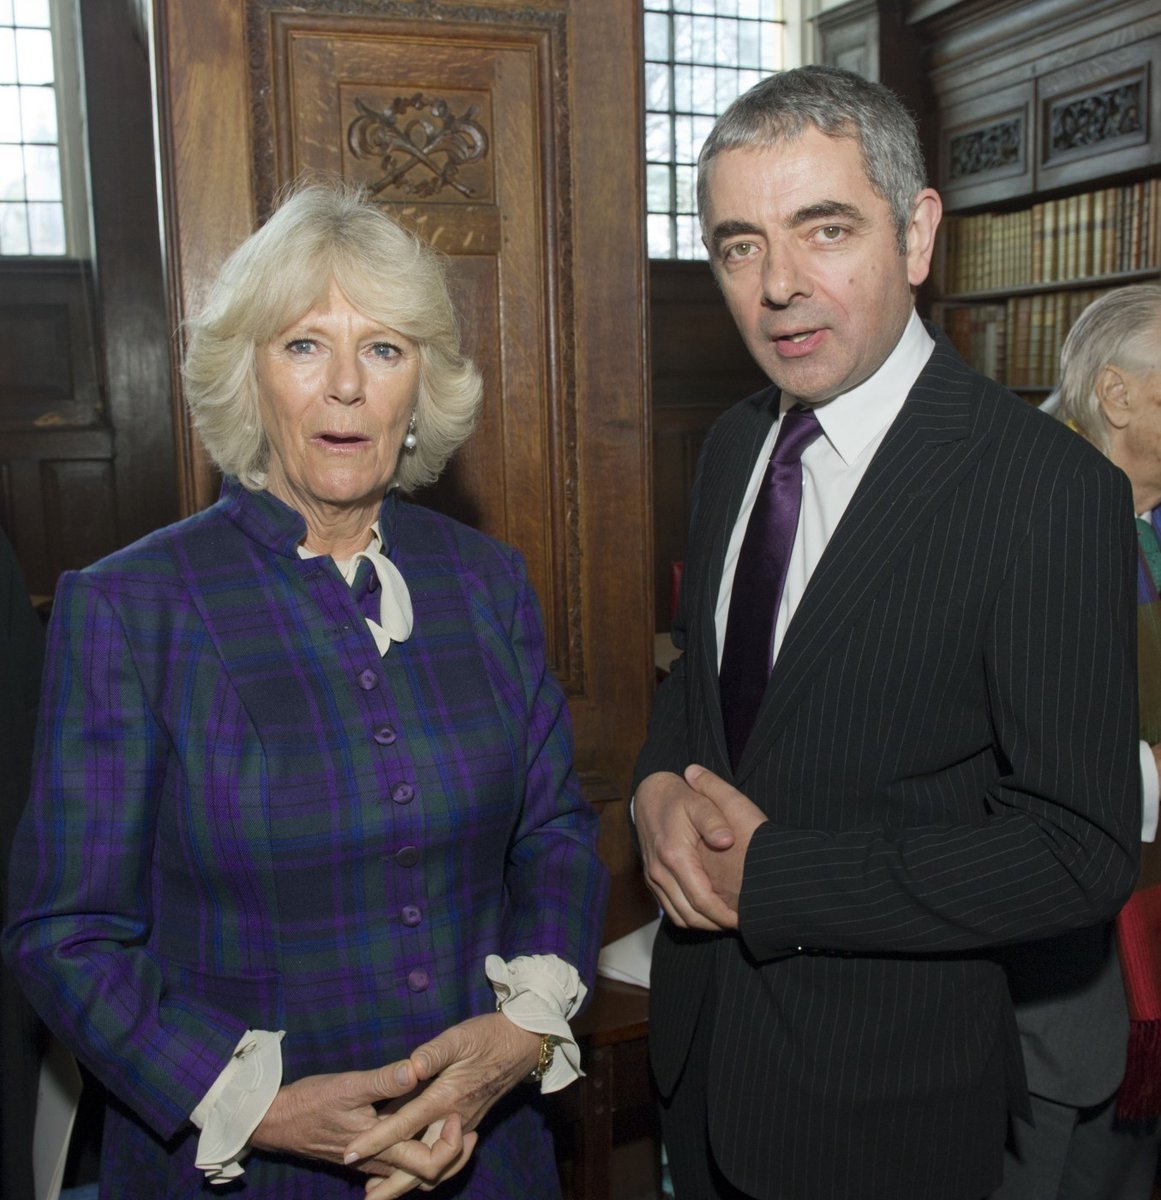 Vévodkyně z Cornwallu Camilla se setkala s hercem Rowanem Atkinsonem při otevření nové královské koleje u Oxfordské univerzity.